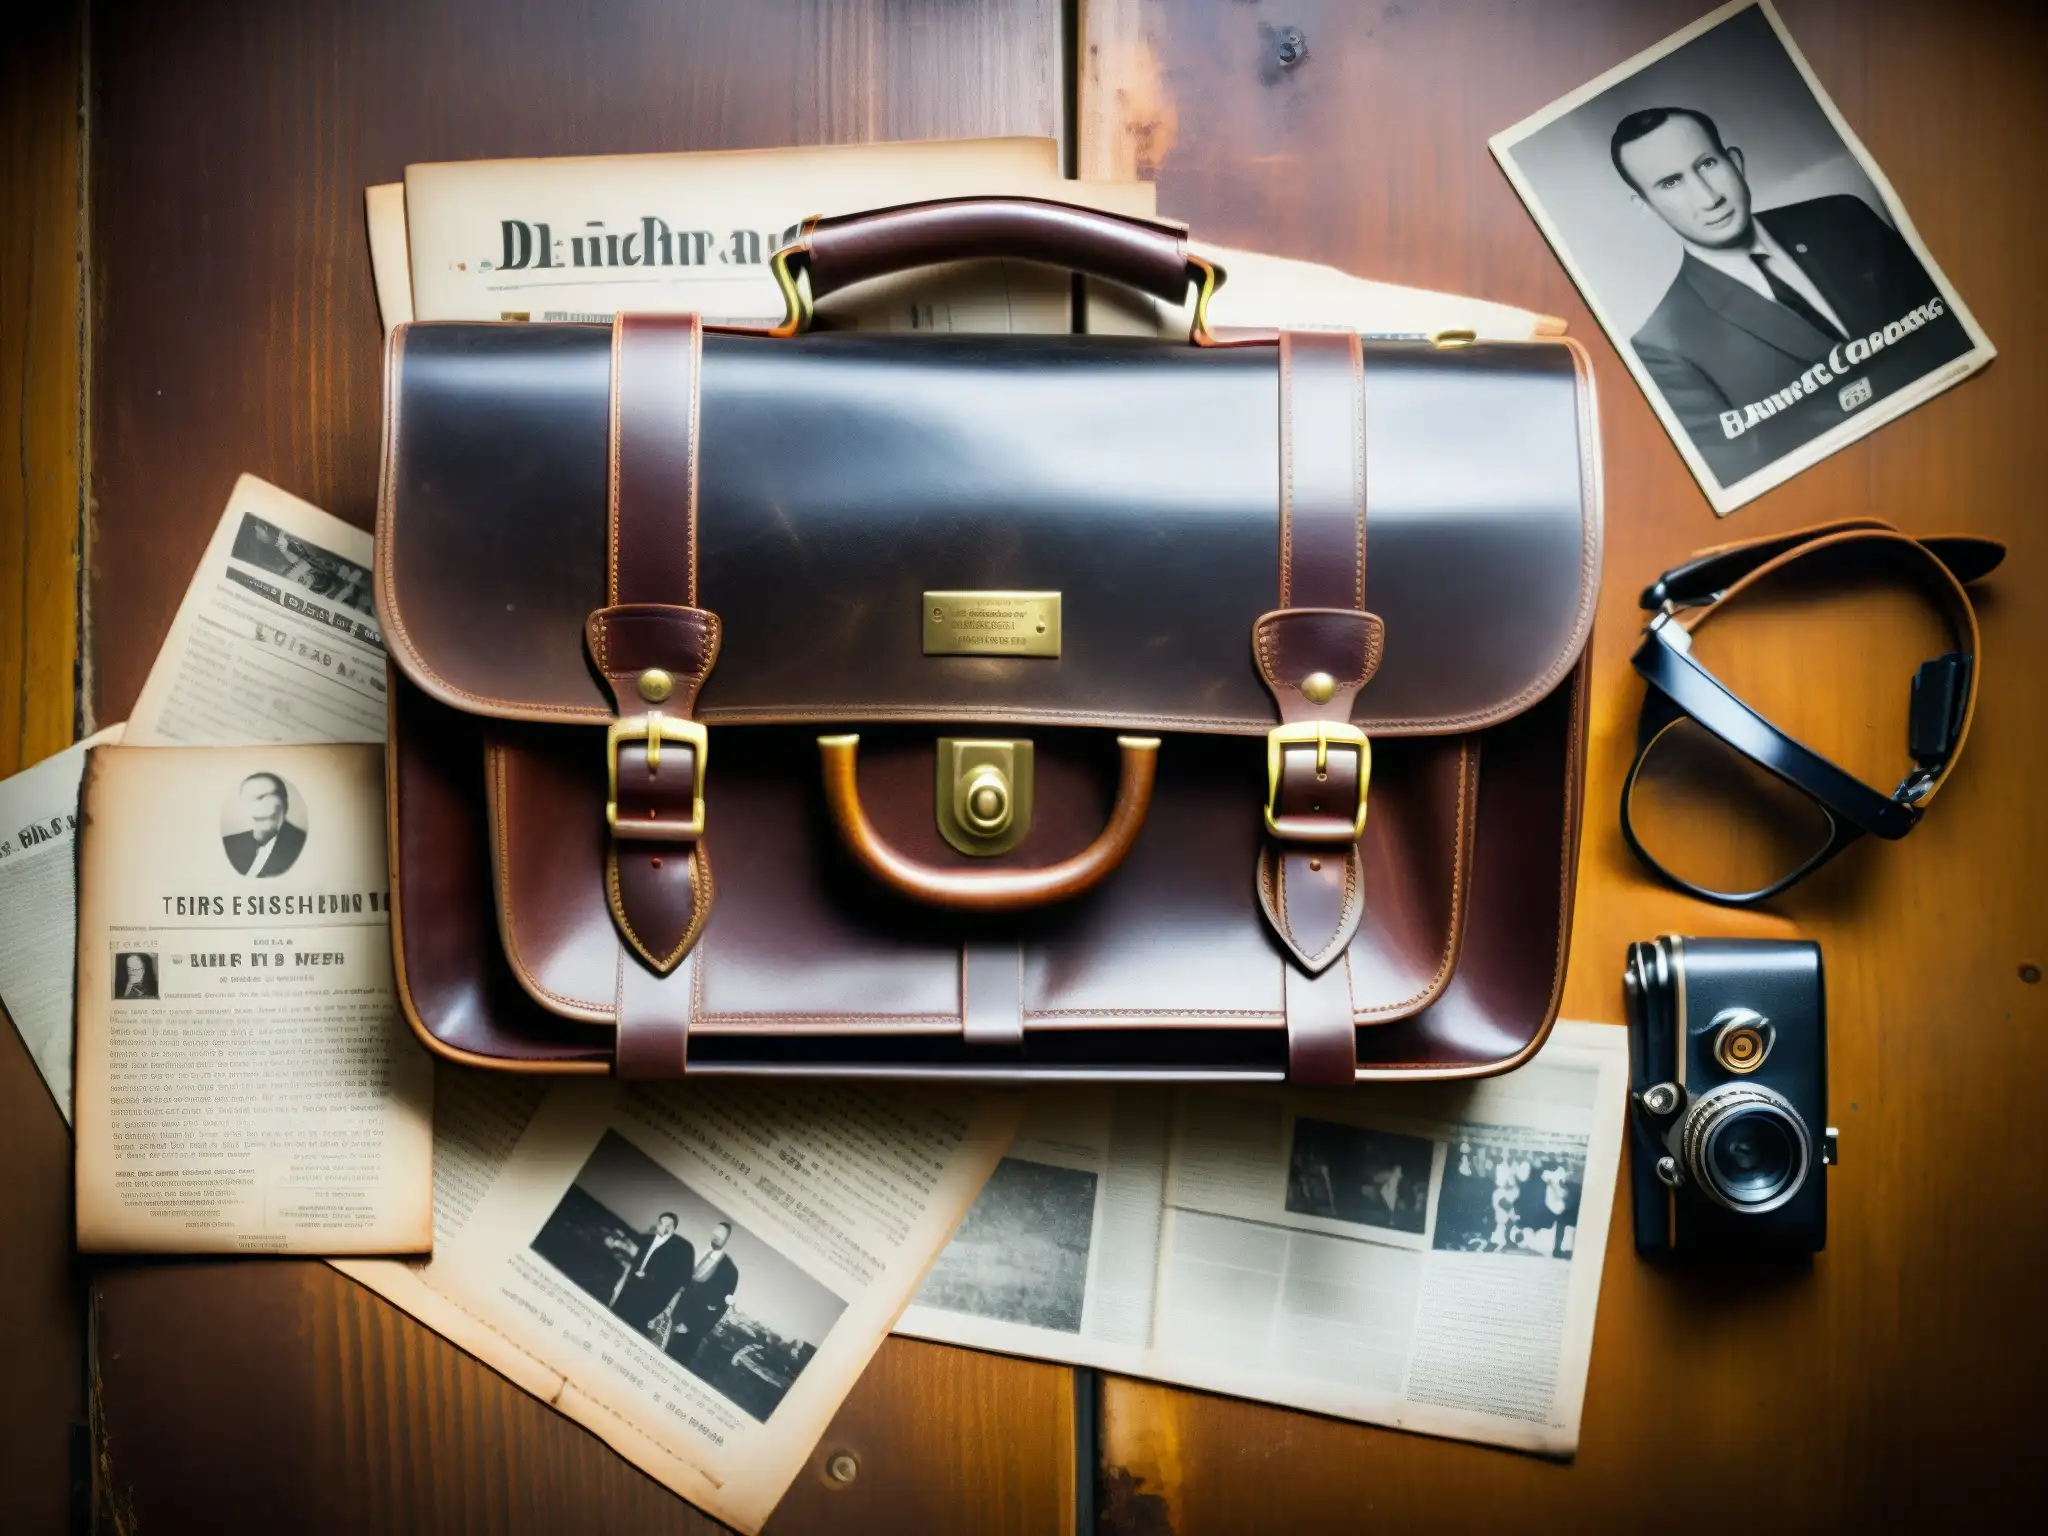 Un maletín envejecido y misterioso, rodeado de documentos y fotos antiguas sobre el caso del misterio del maletín D